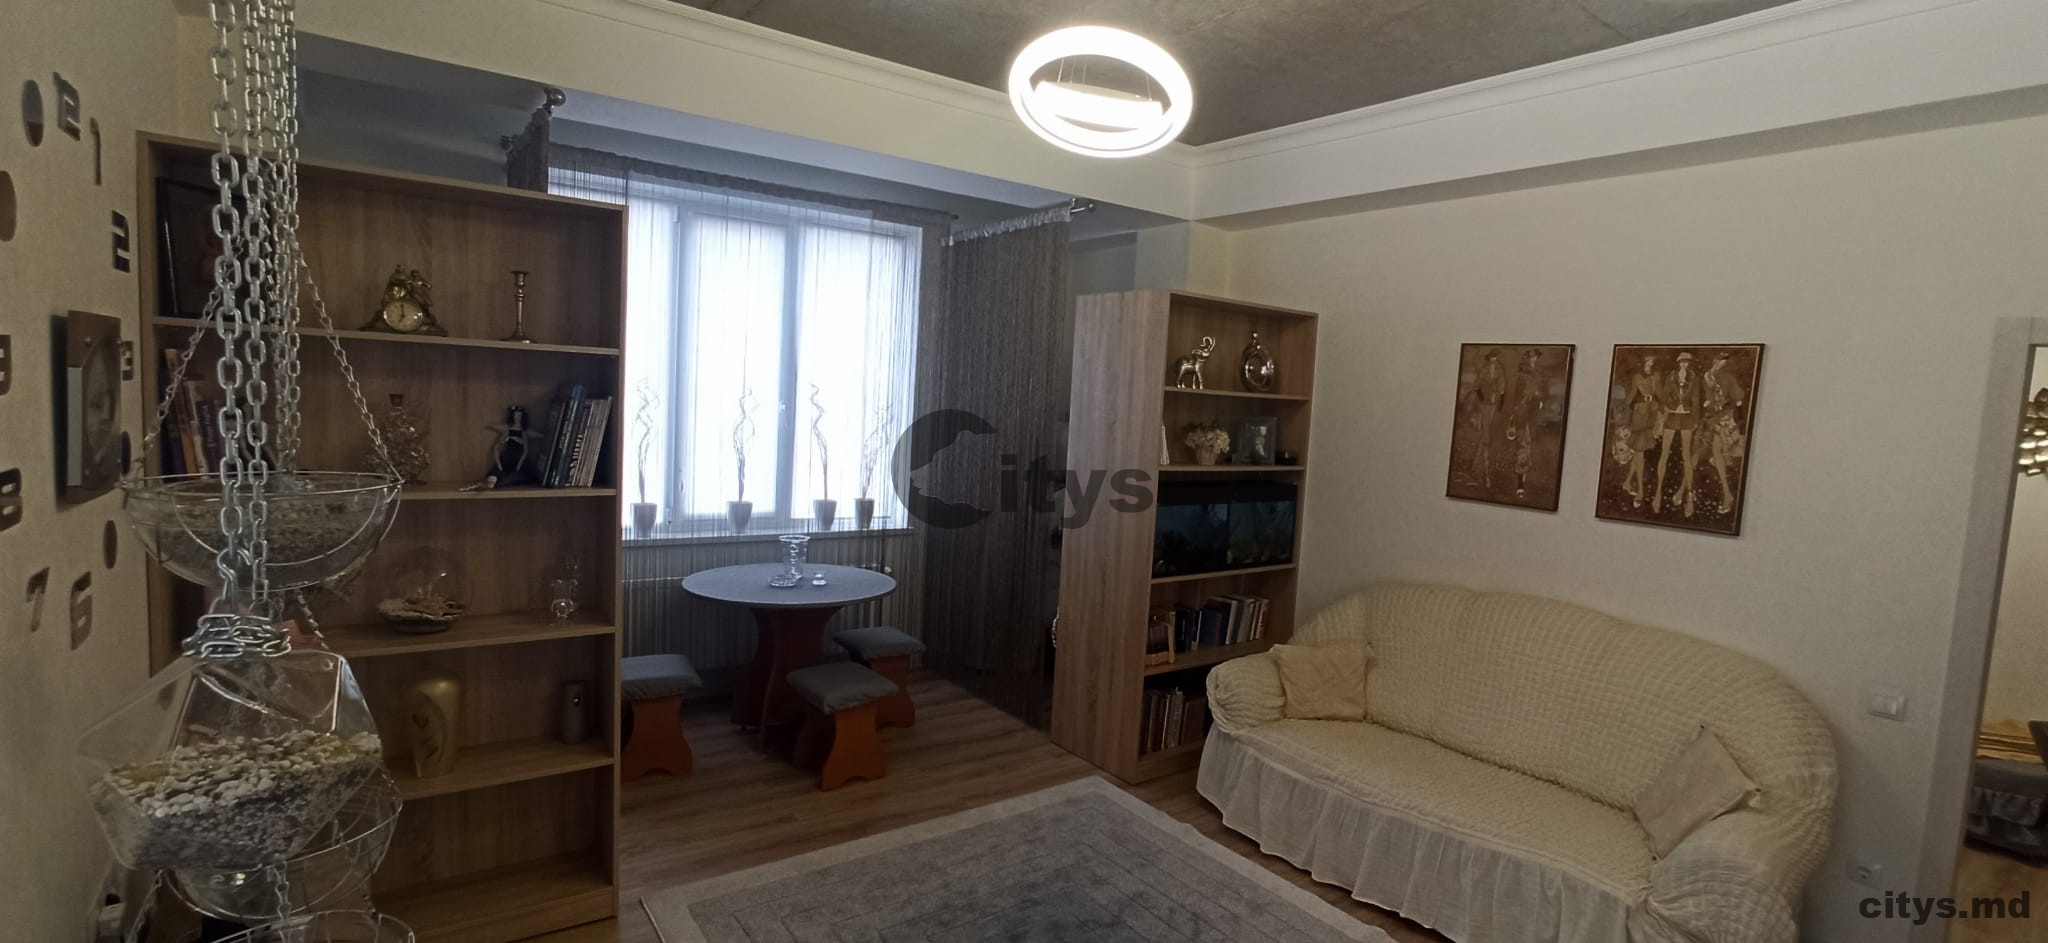 1 комнатная квартира, 47м², Moldova, Chișinău, strada Ciocârliei photo 8